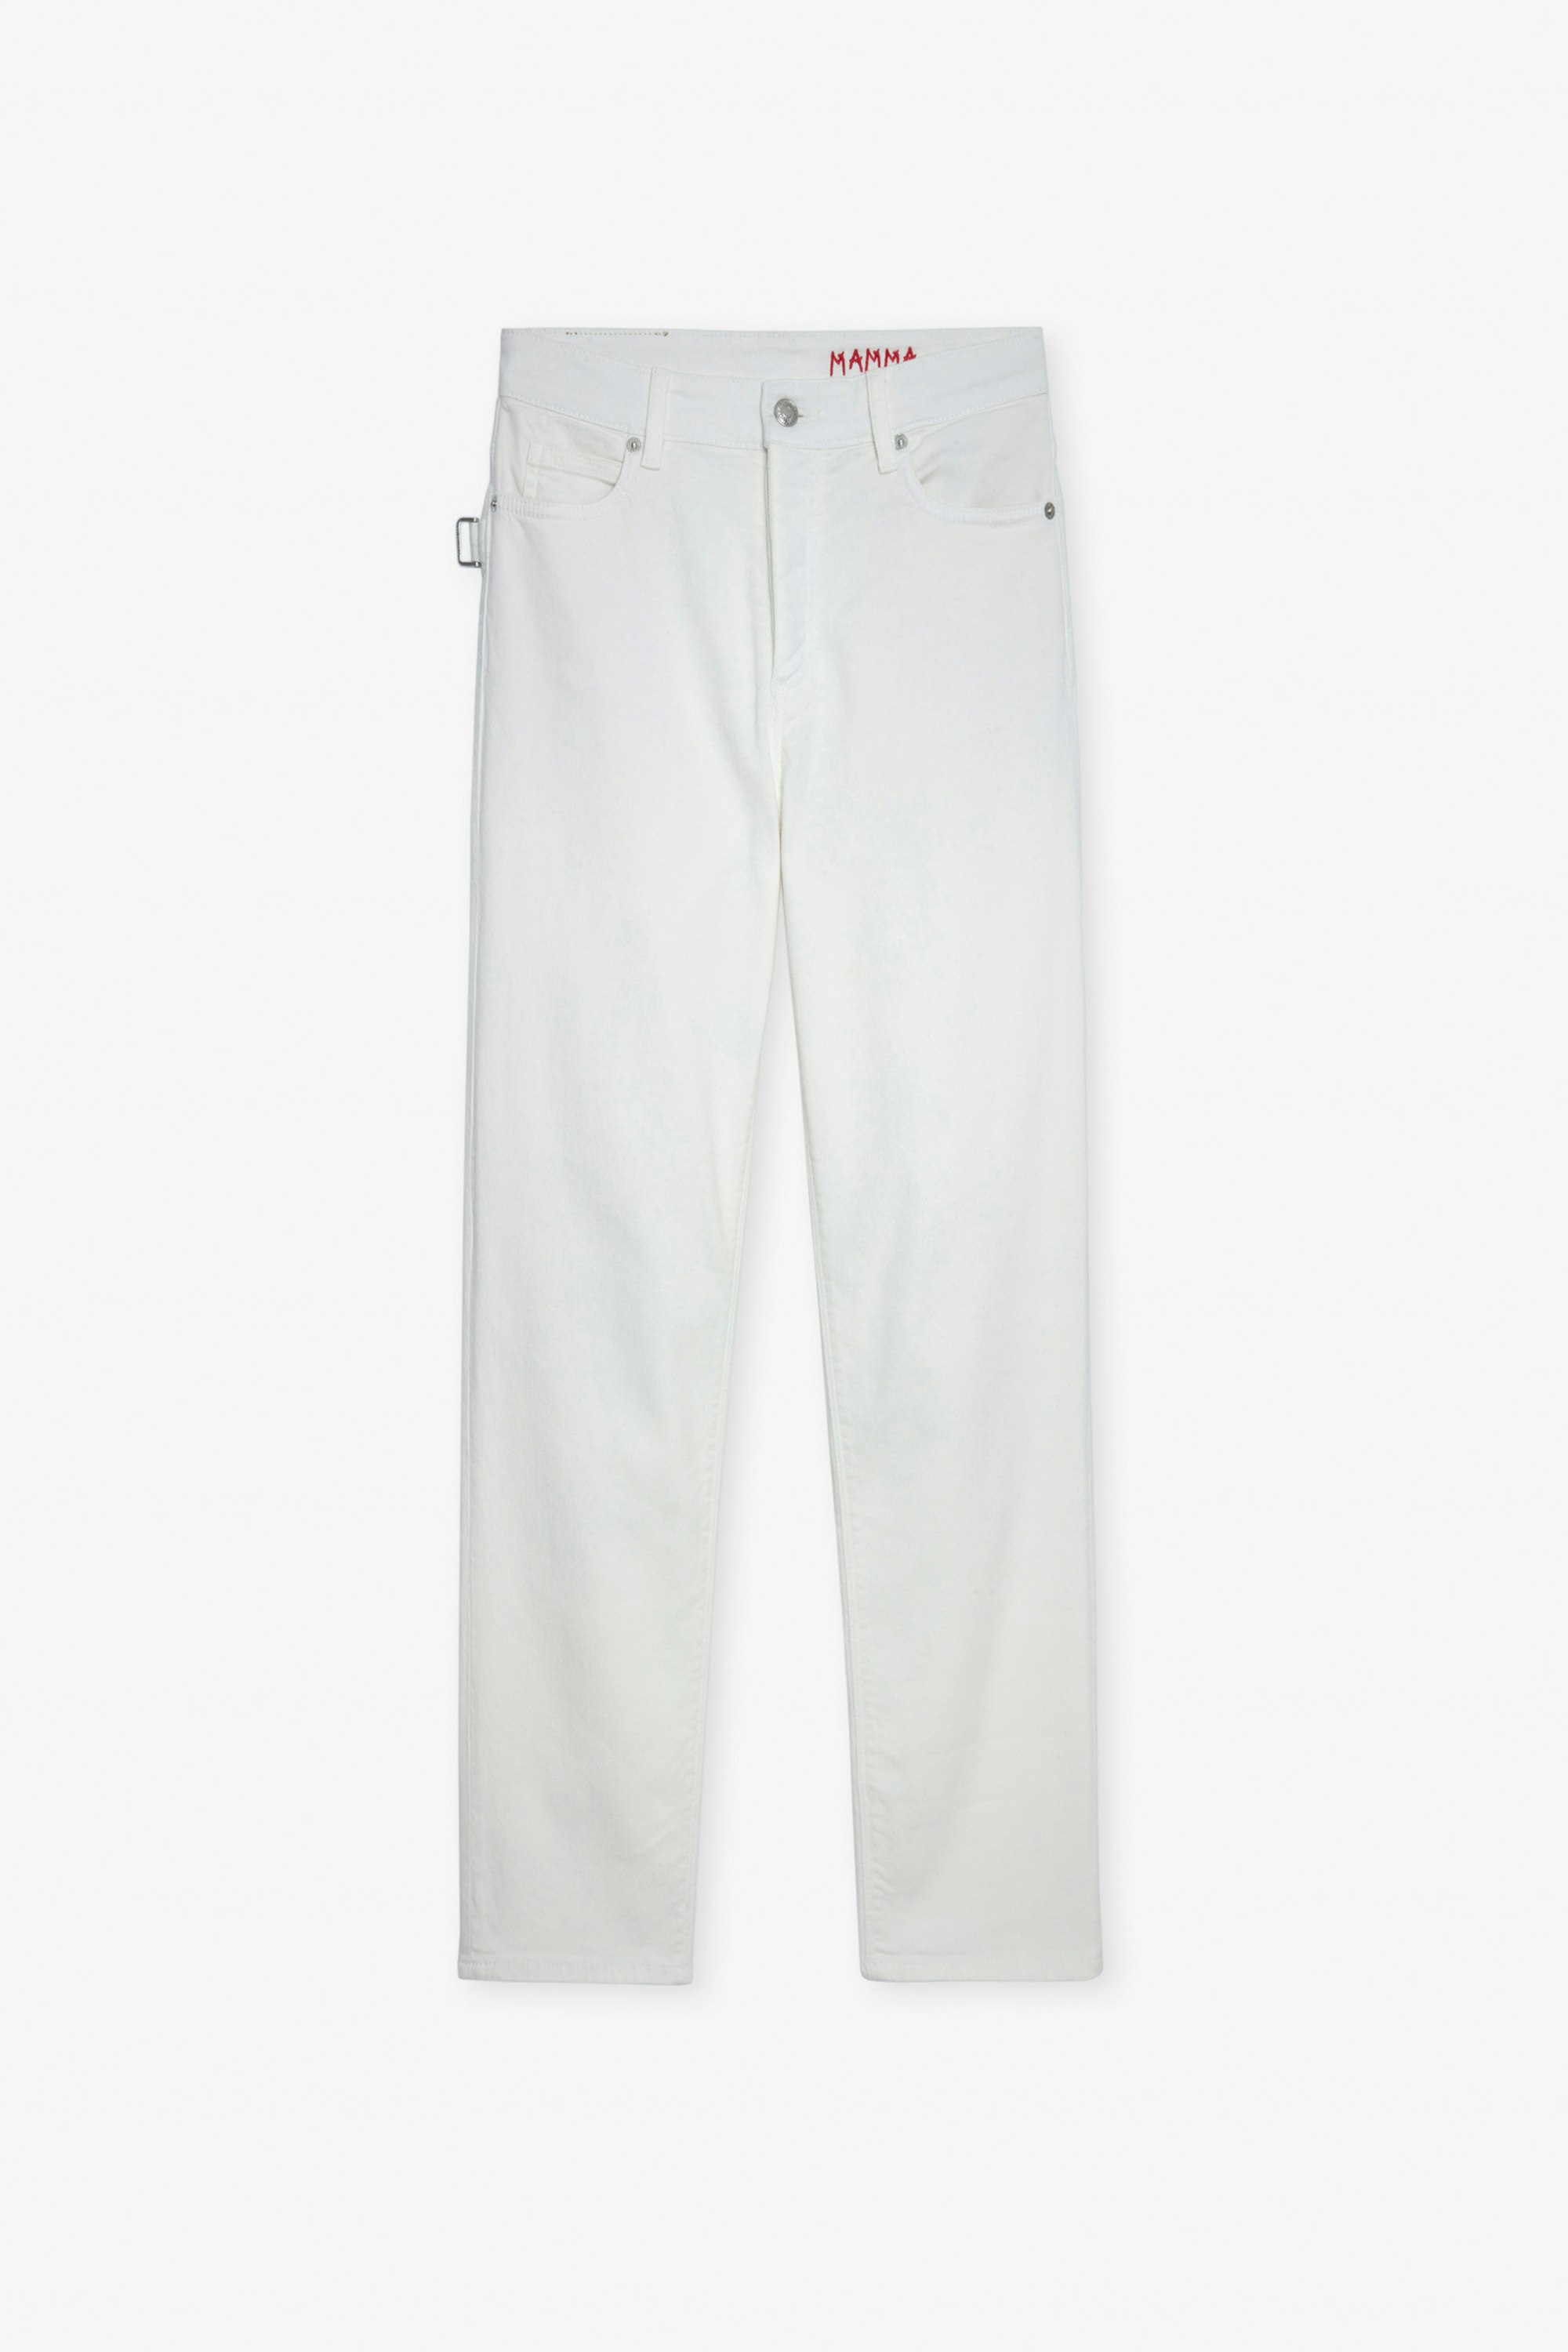 Jeans Mamma - Jeans da donna in denim bianco con ricamo "Mamma".